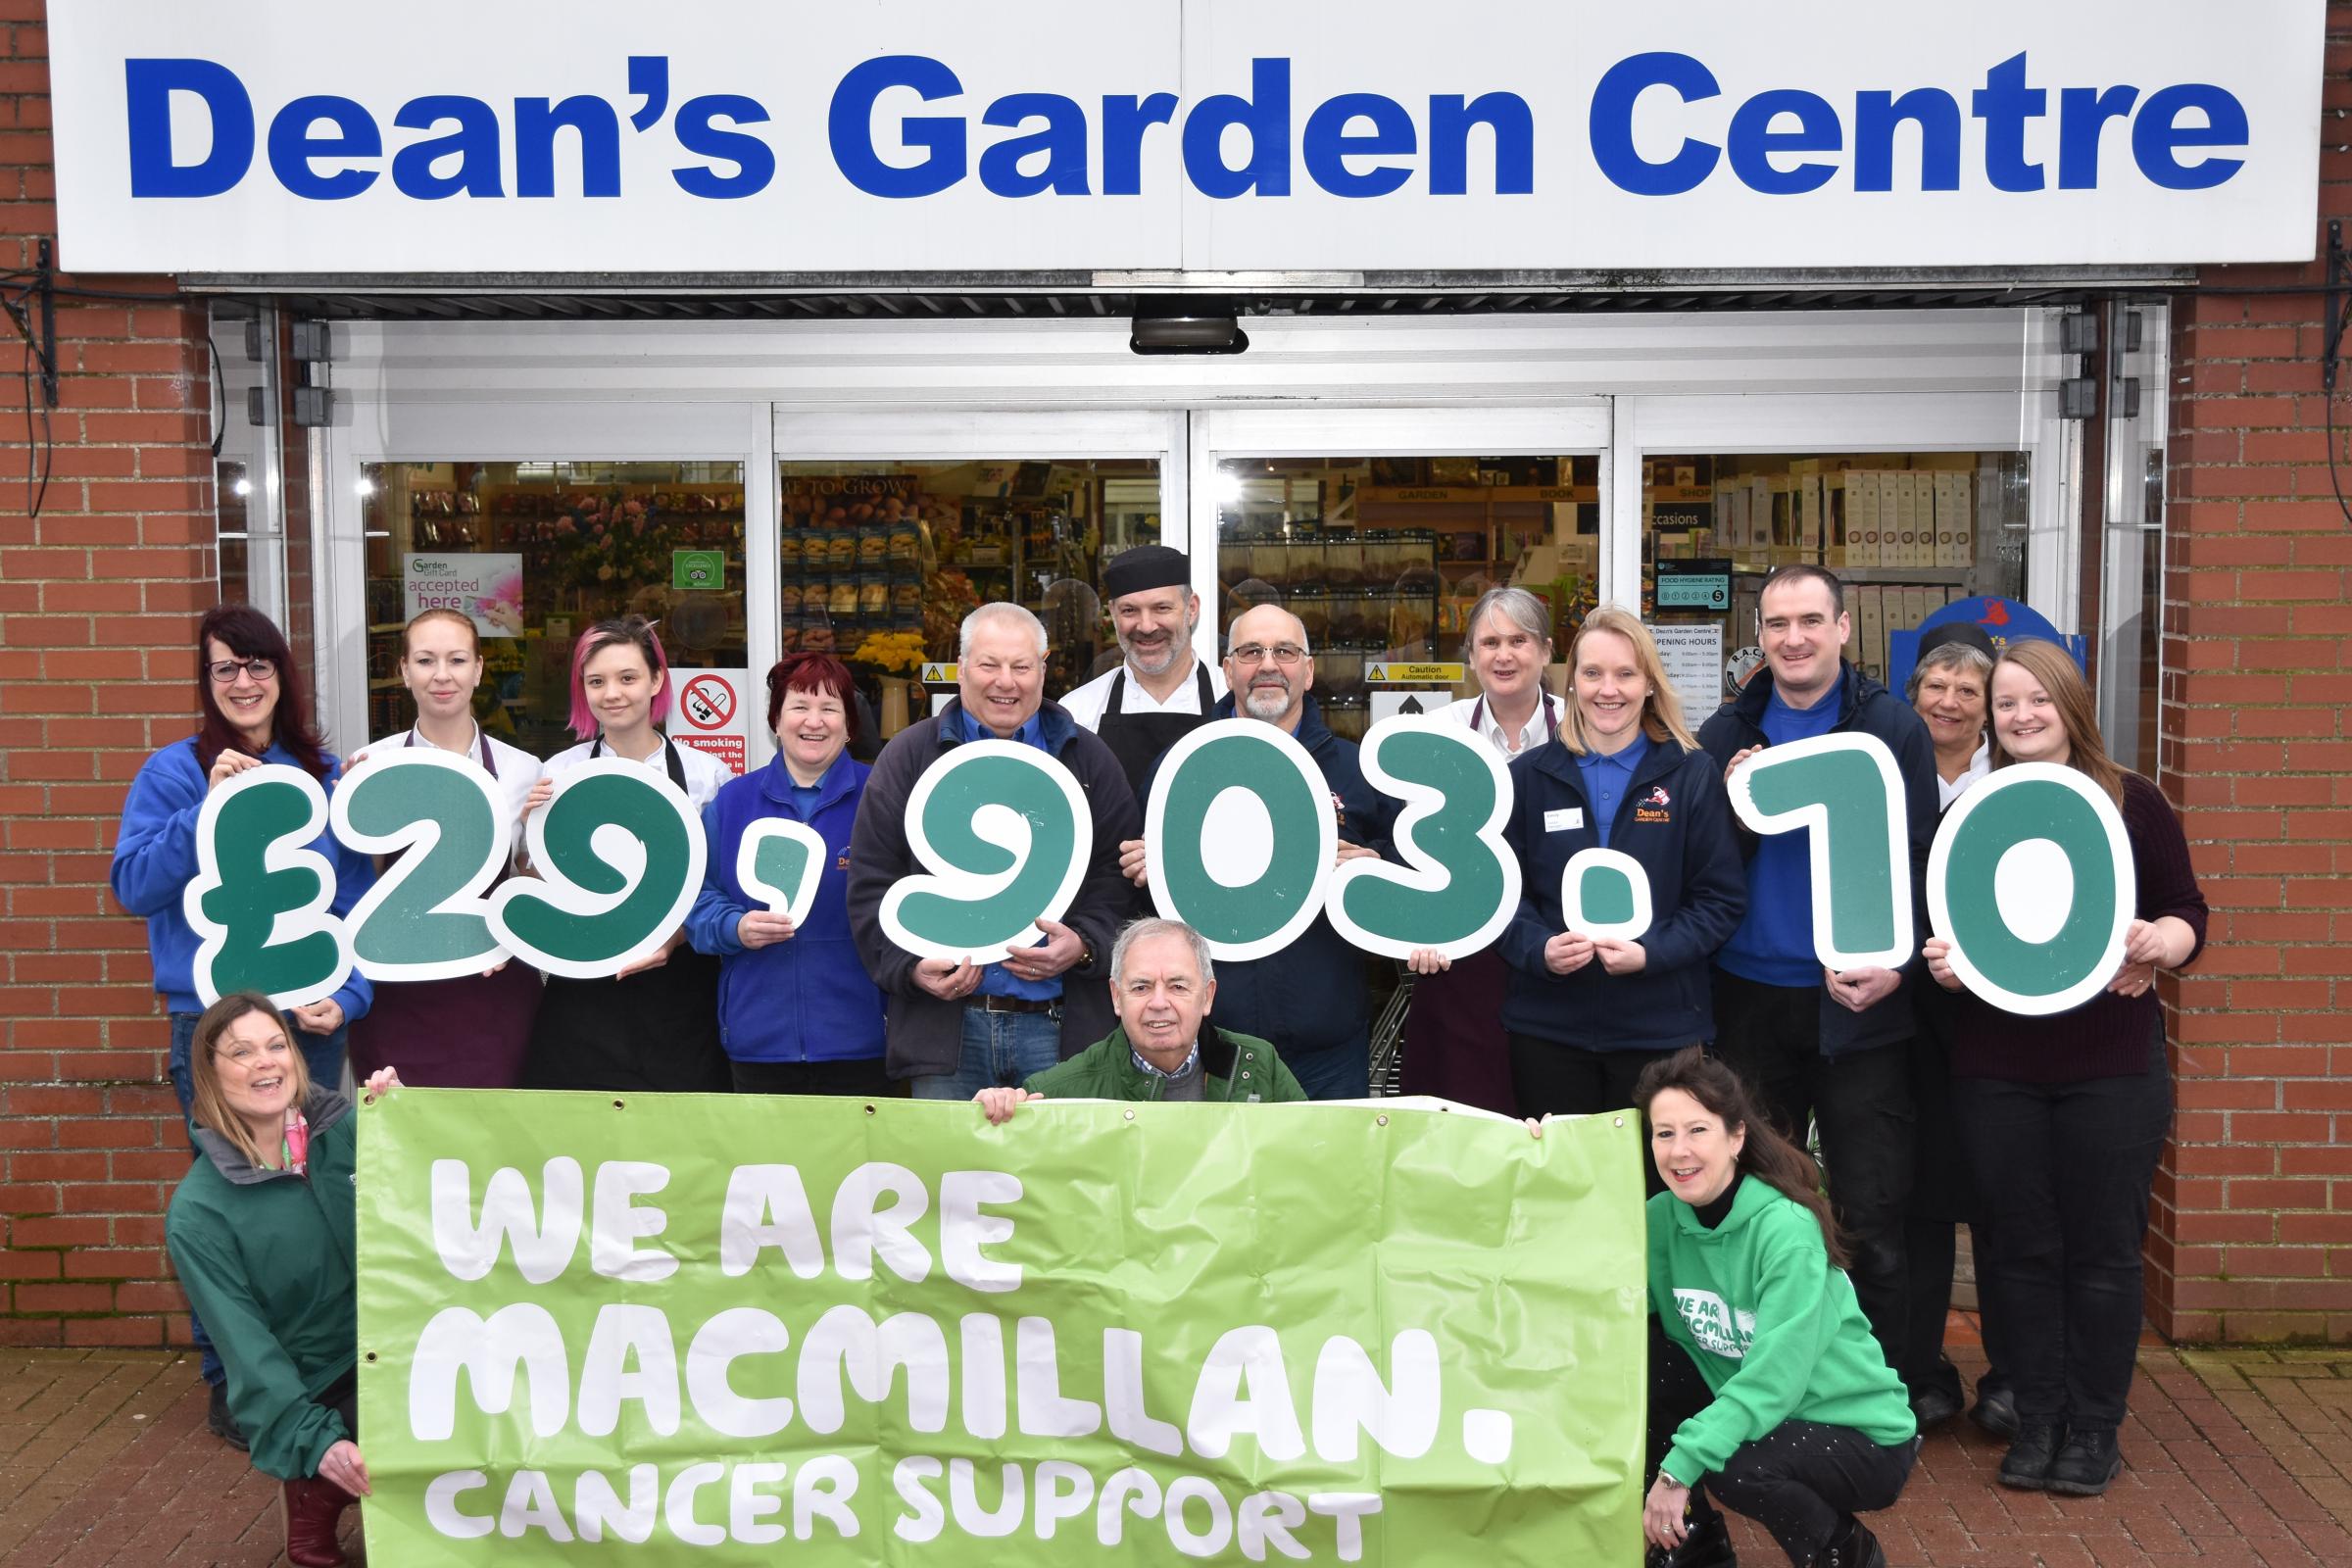 Family-run garden centre raises £30k for cancer charity